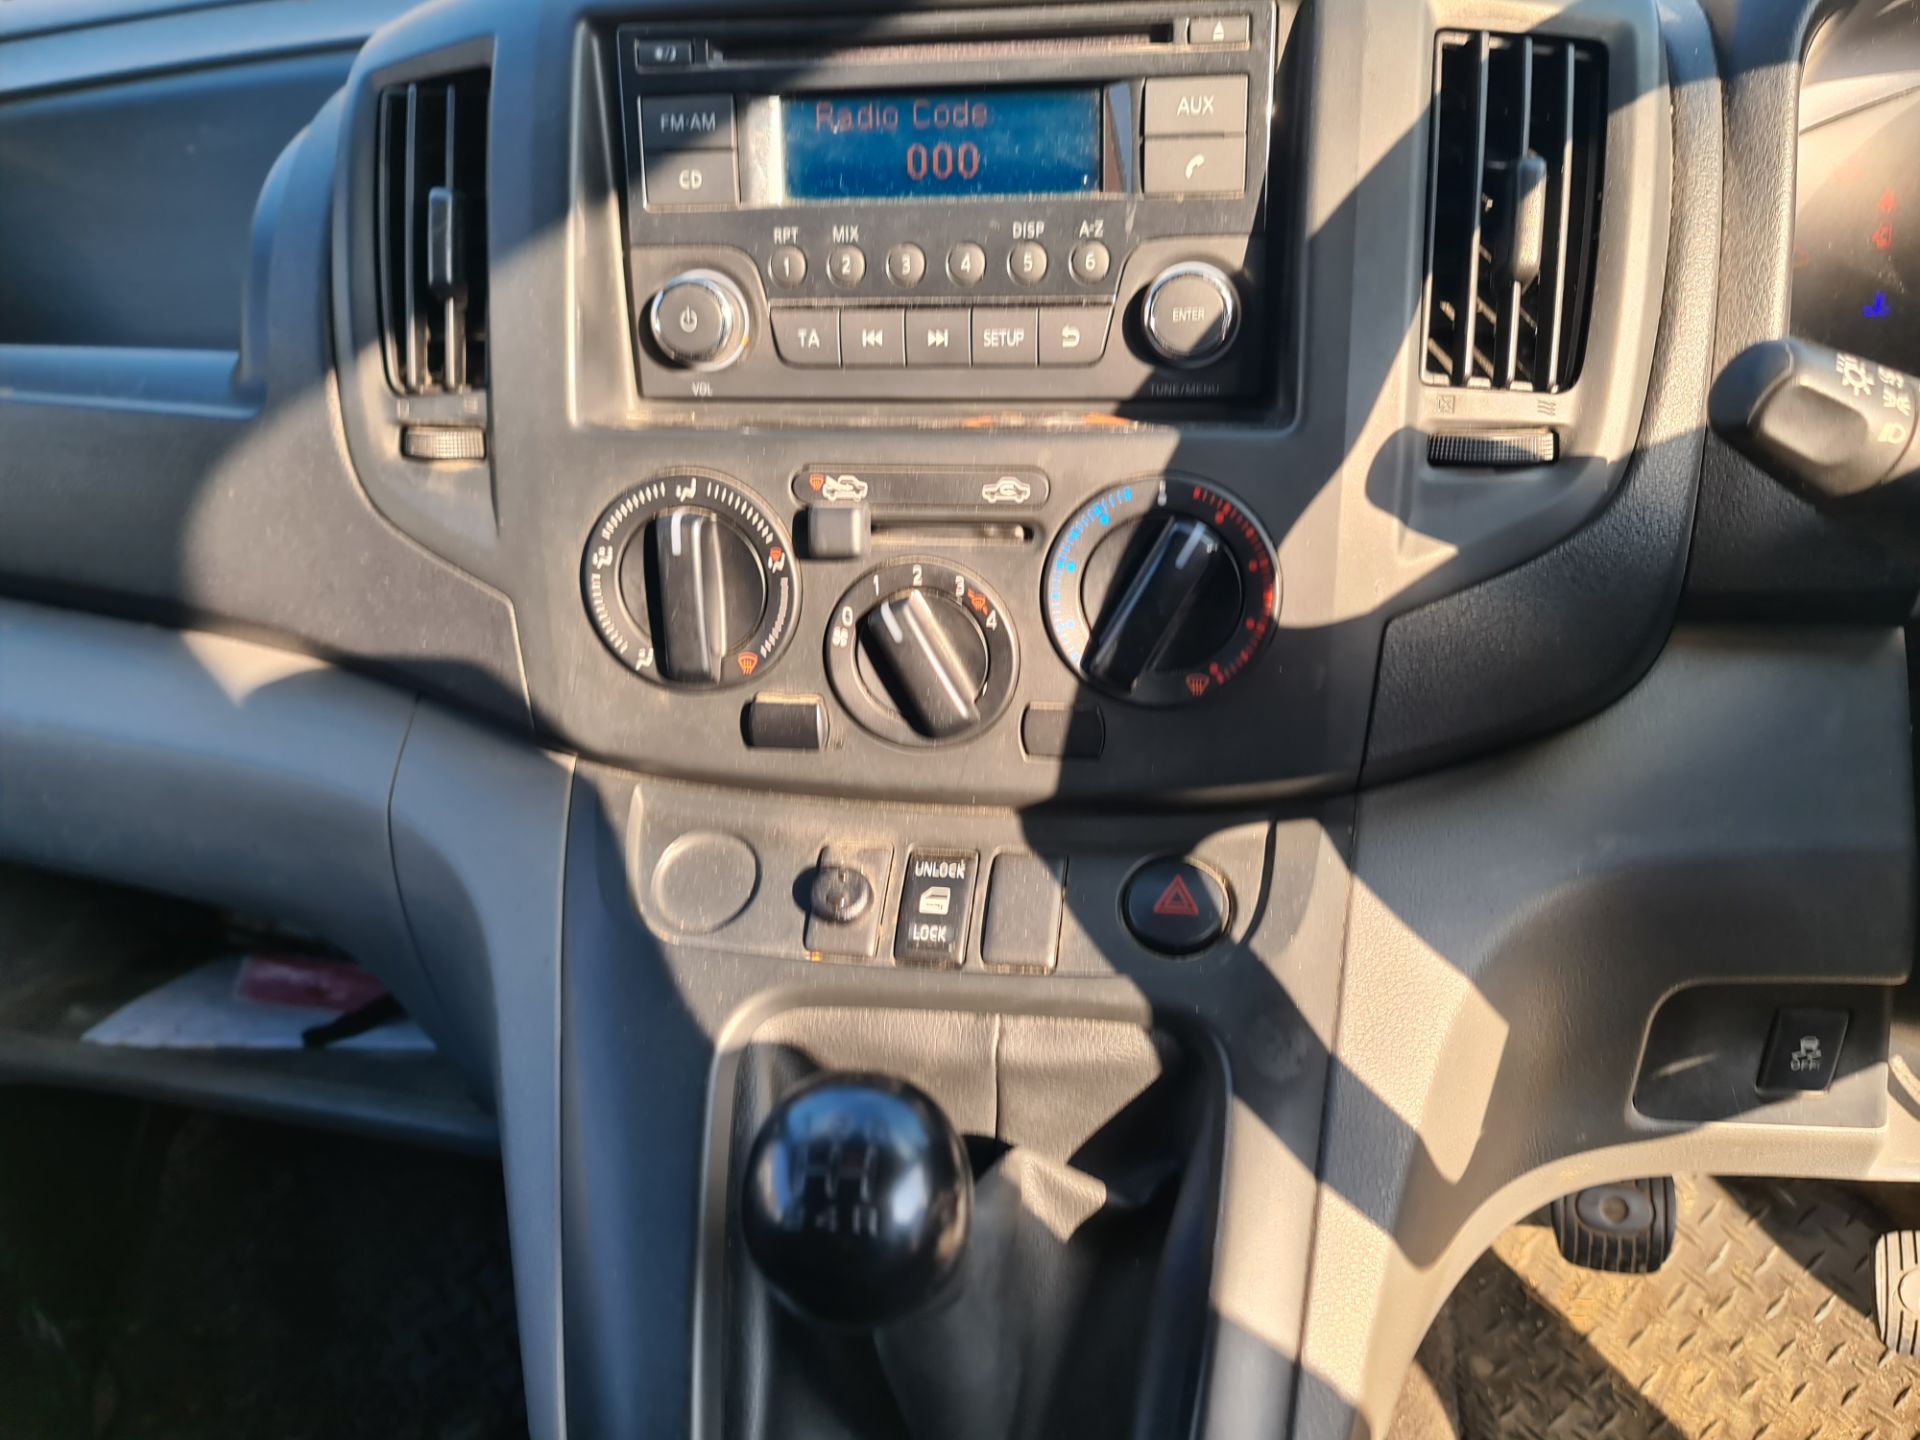 2018 Nissan NV200 Acenta DCI car derived van - Image 83 of 93